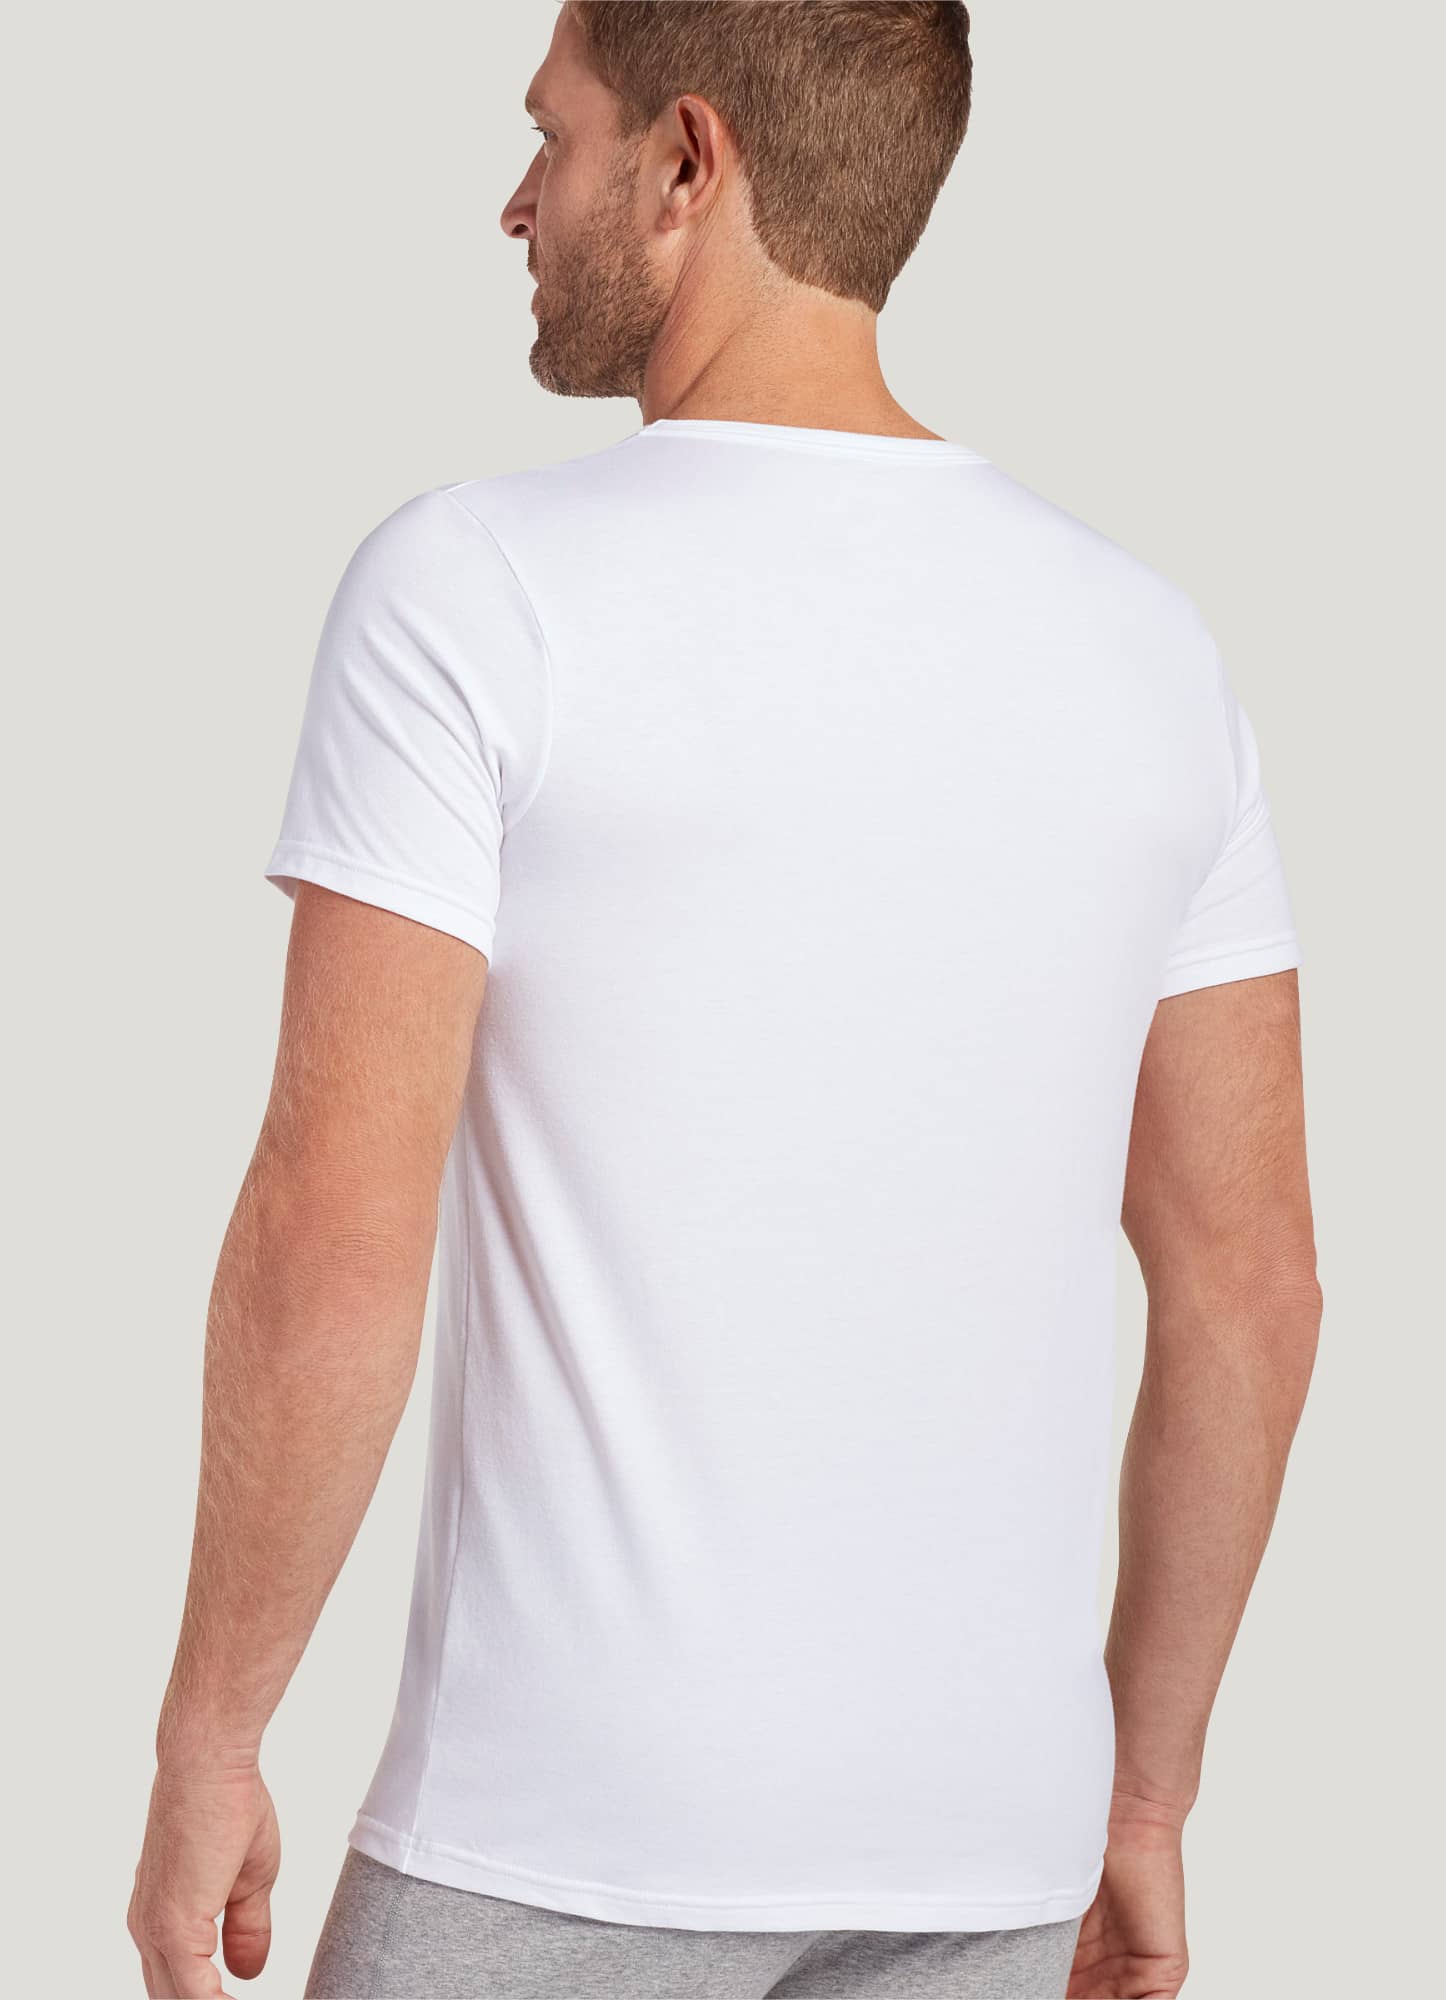 Slim Fit V-Neck T-Shirt